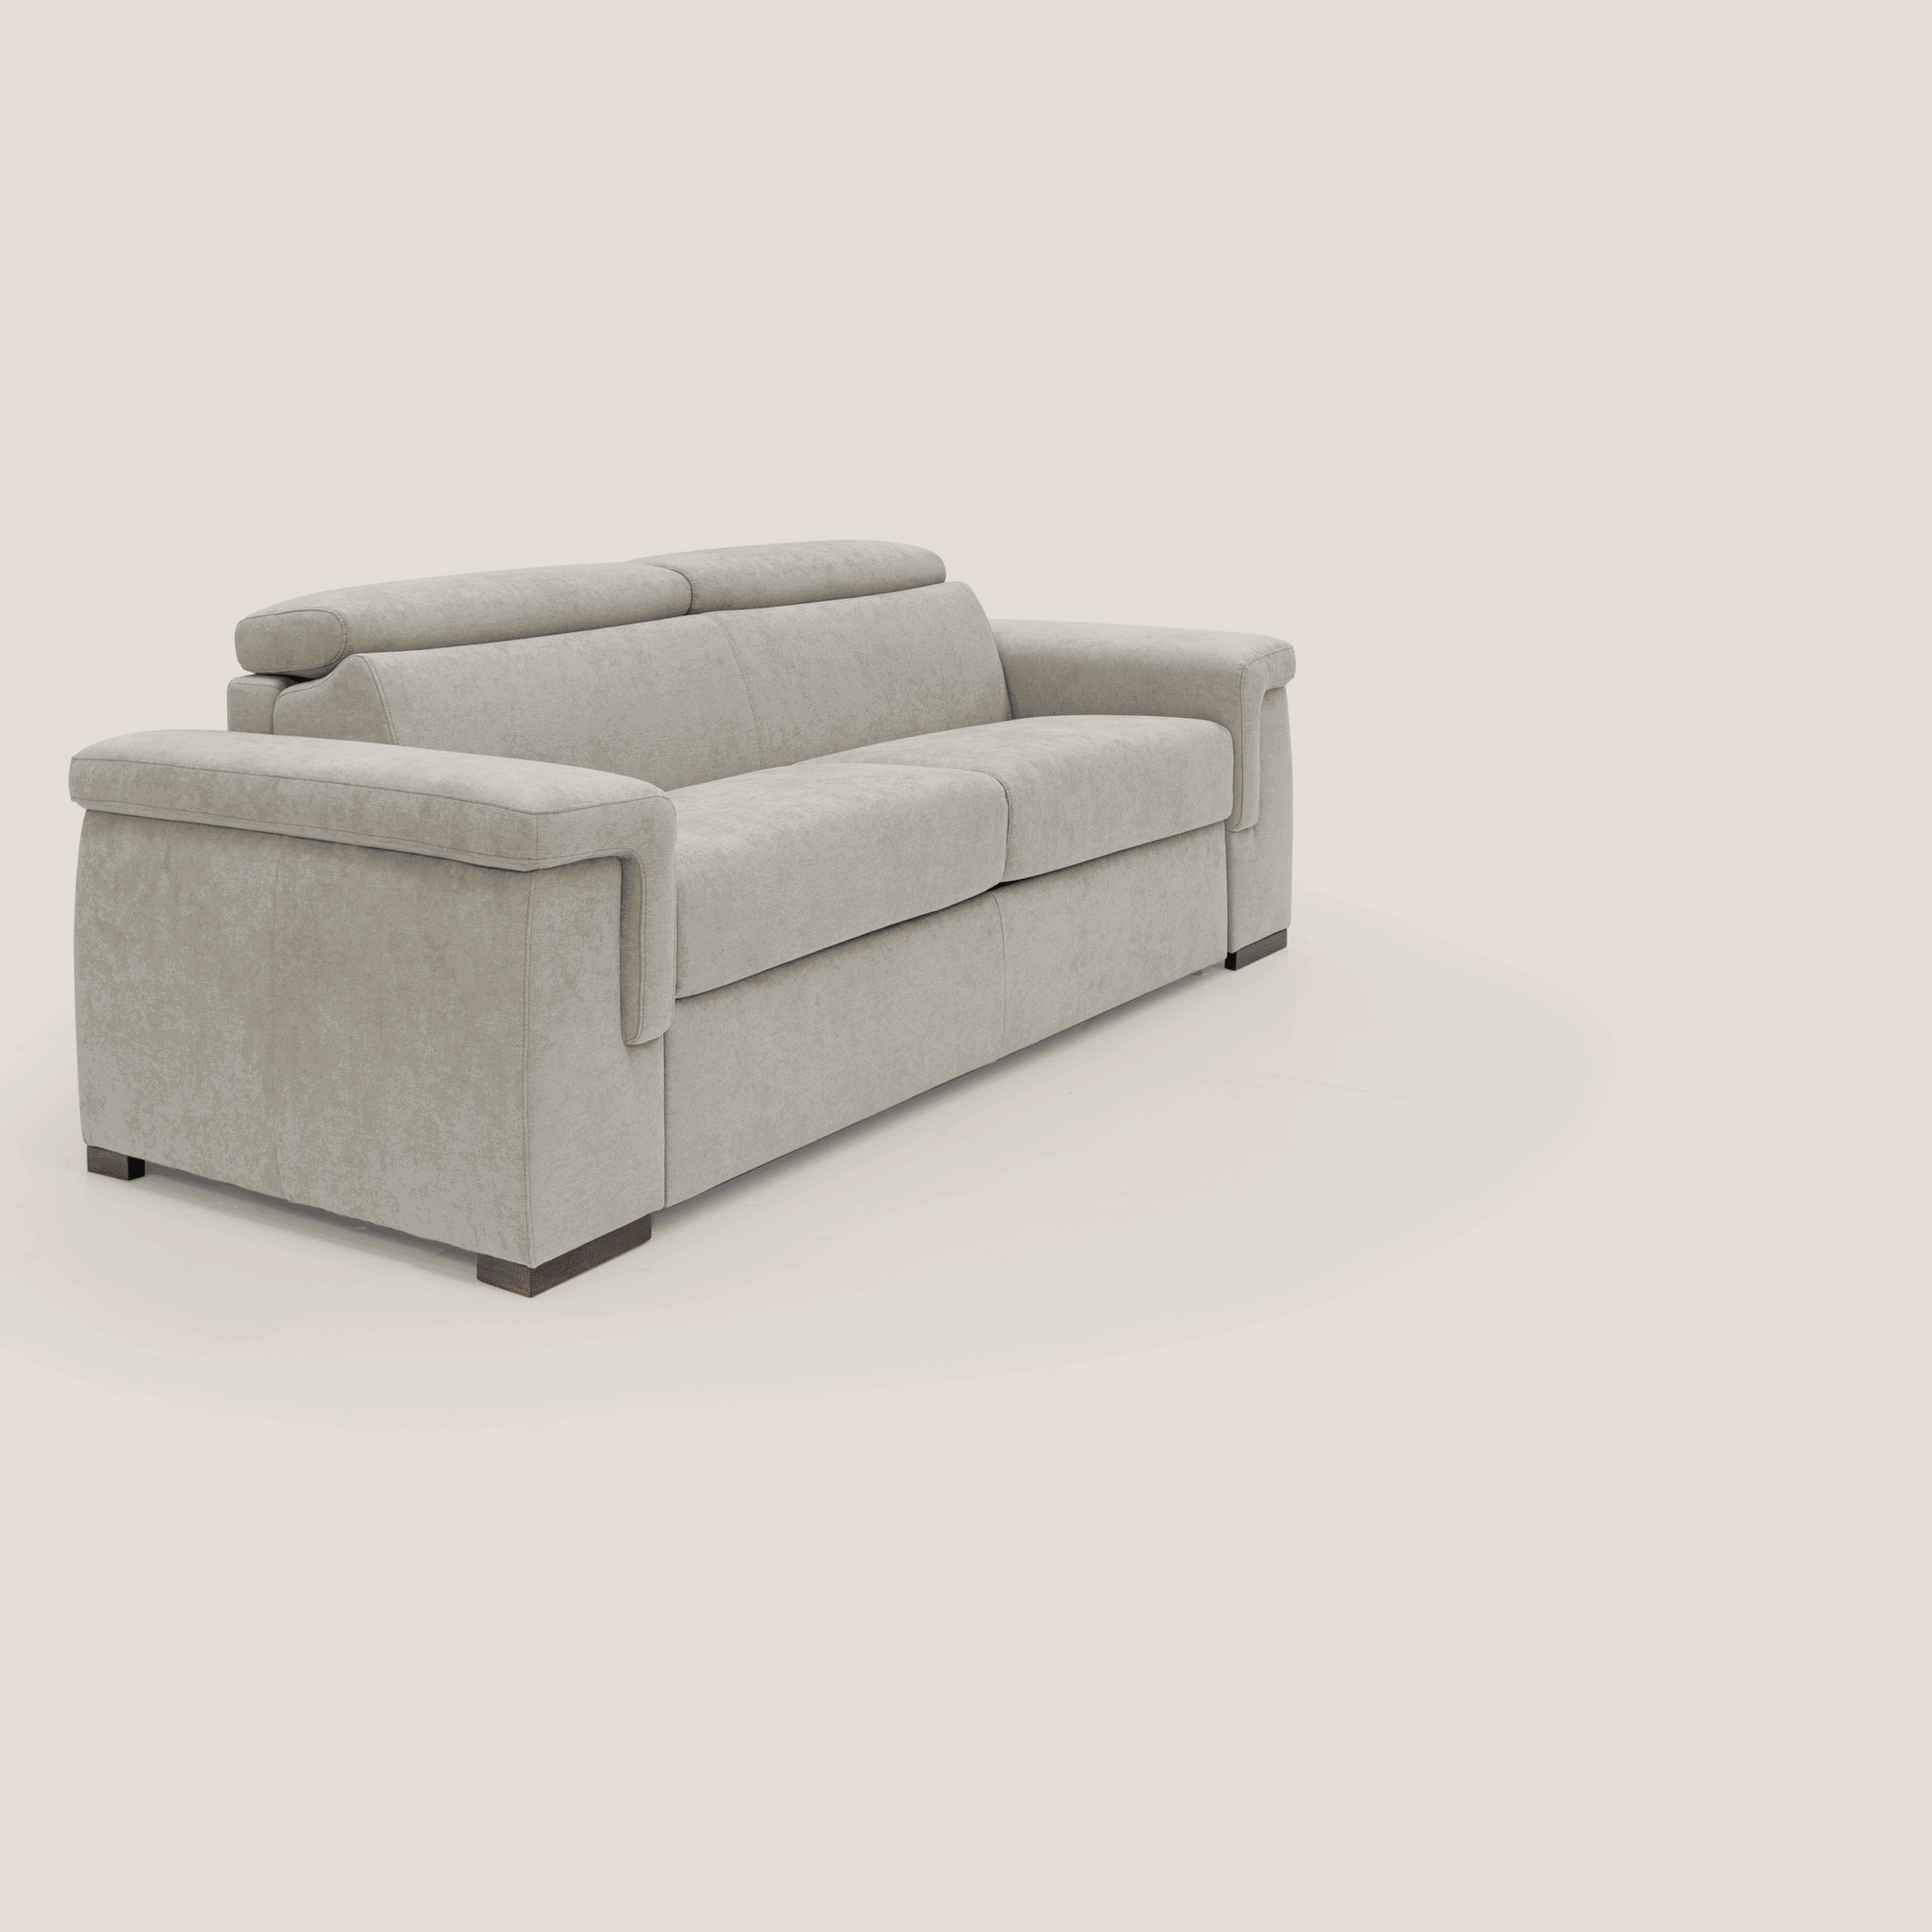 Giunone divano letto con materasso alto 18 cm e poggiatesta reclinabili in tessuto impermeabile T02